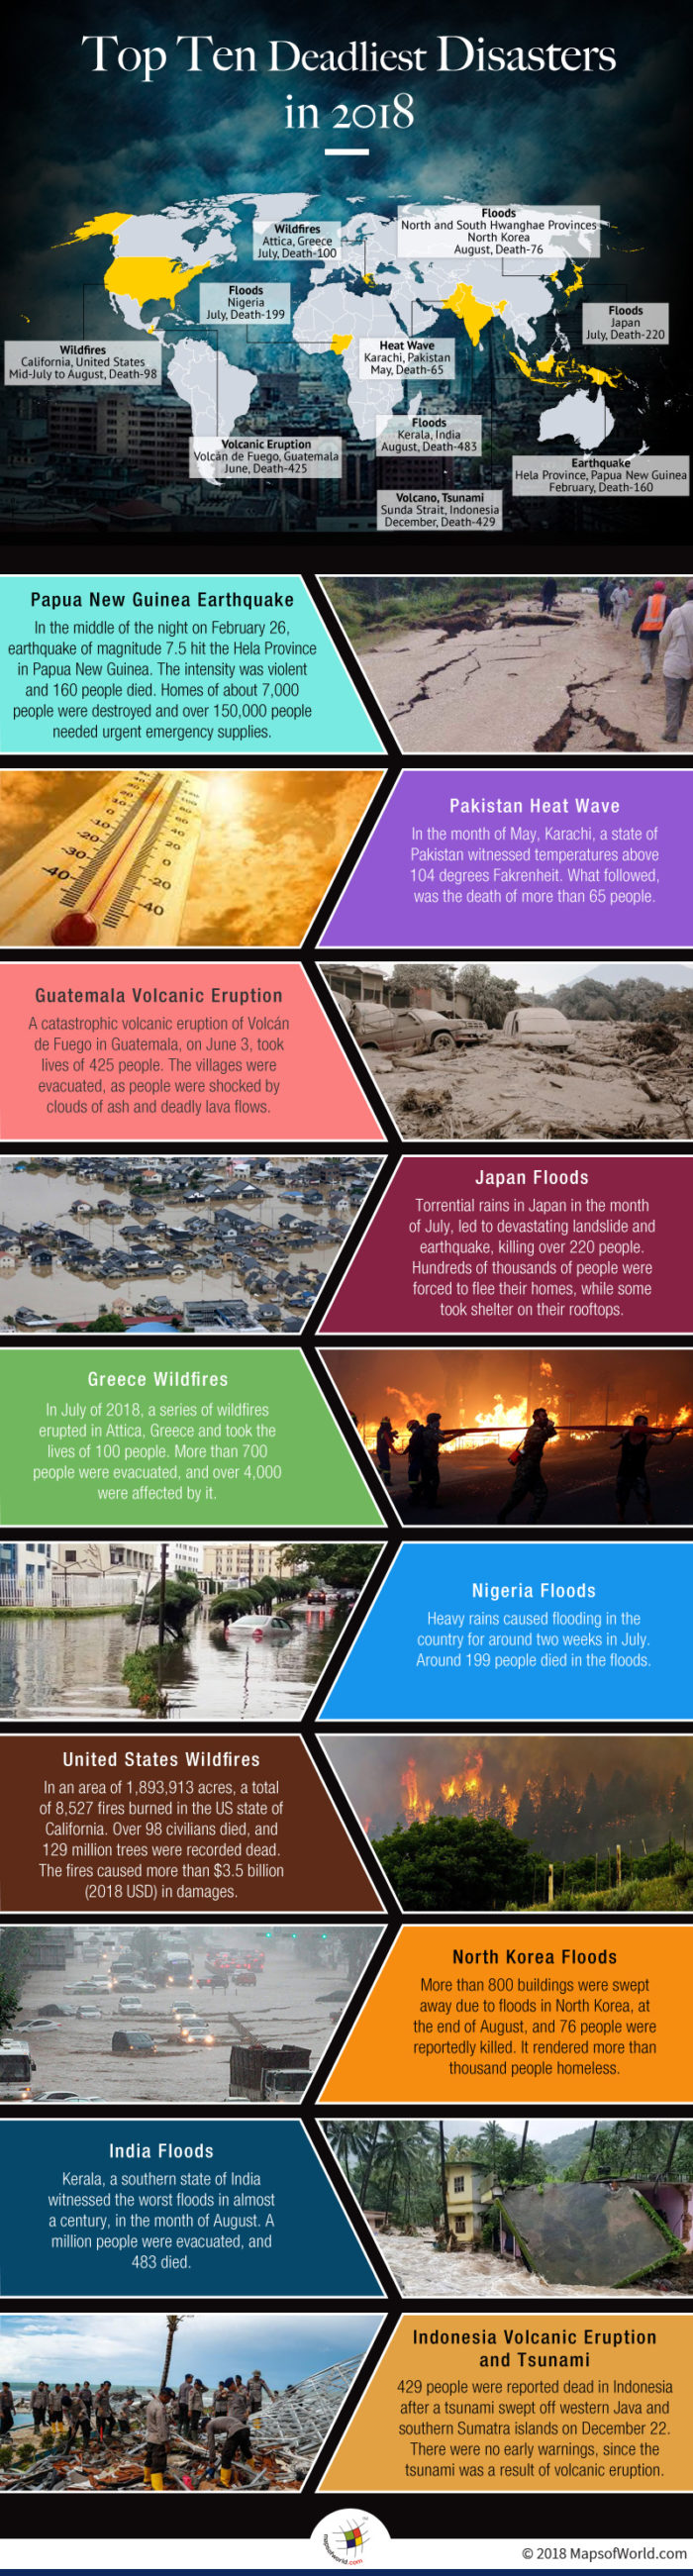 List of Top Ten Deadliest Disasters in 2018